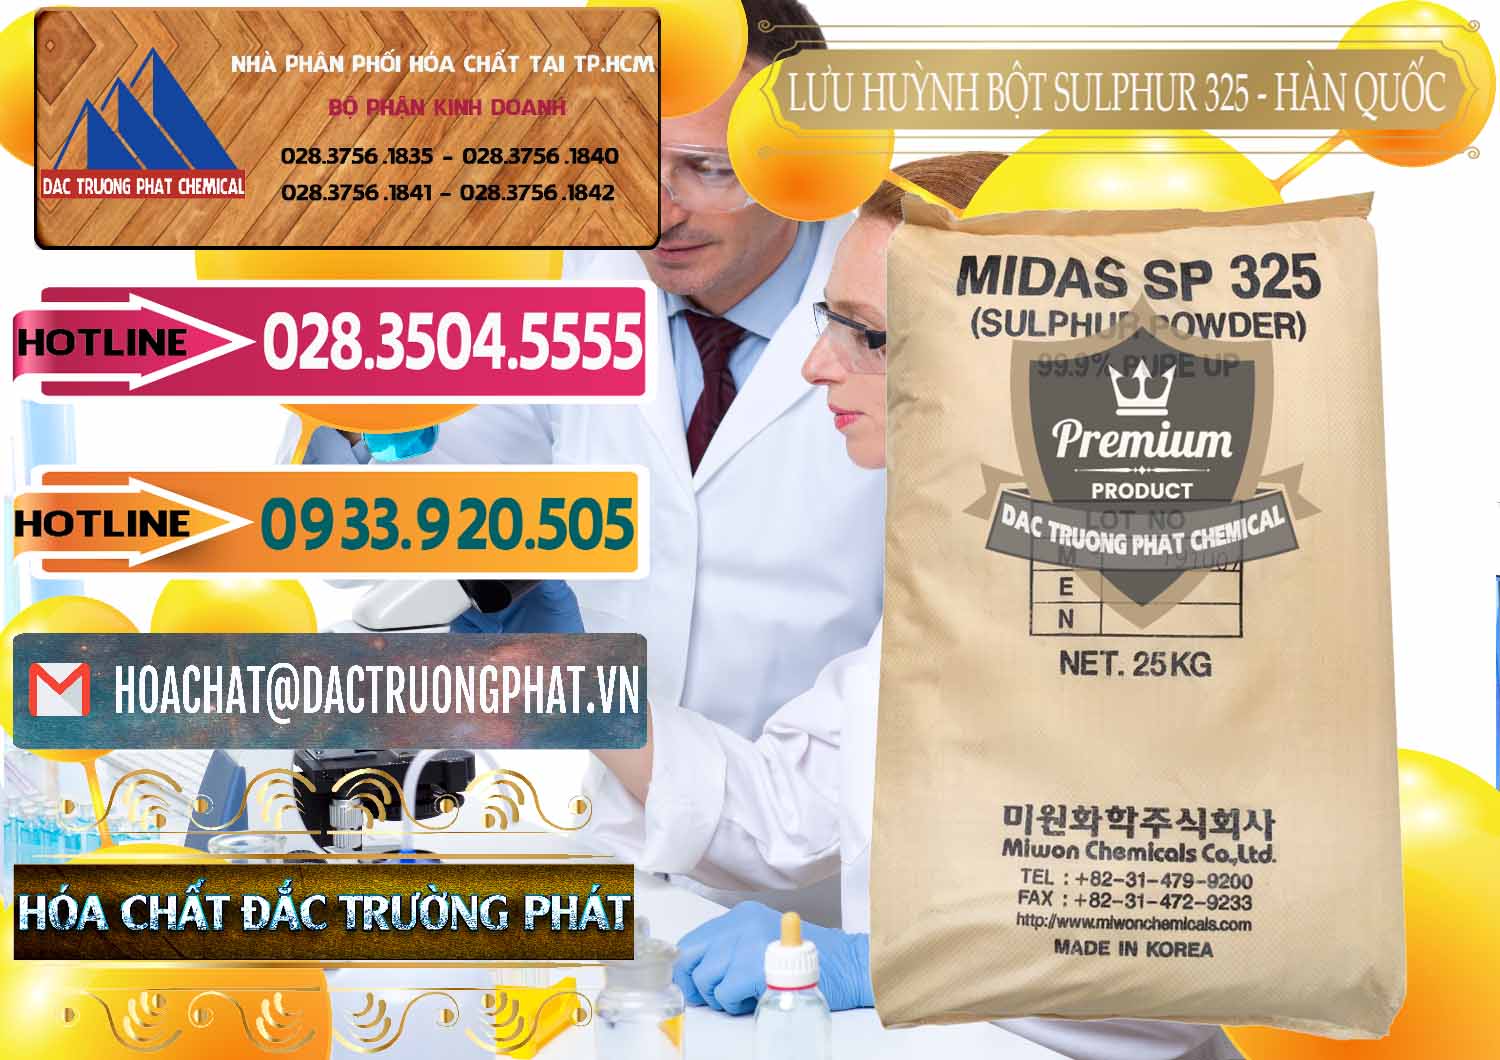 Đơn vị chuyên bán & cung cấp Lưu huỳnh Bột - Sulfur Powder Midas SP 325 Hàn Quốc Korea - 0198 - Cty phân phối - cung ứng hóa chất tại TP.HCM - dactruongphat.vn